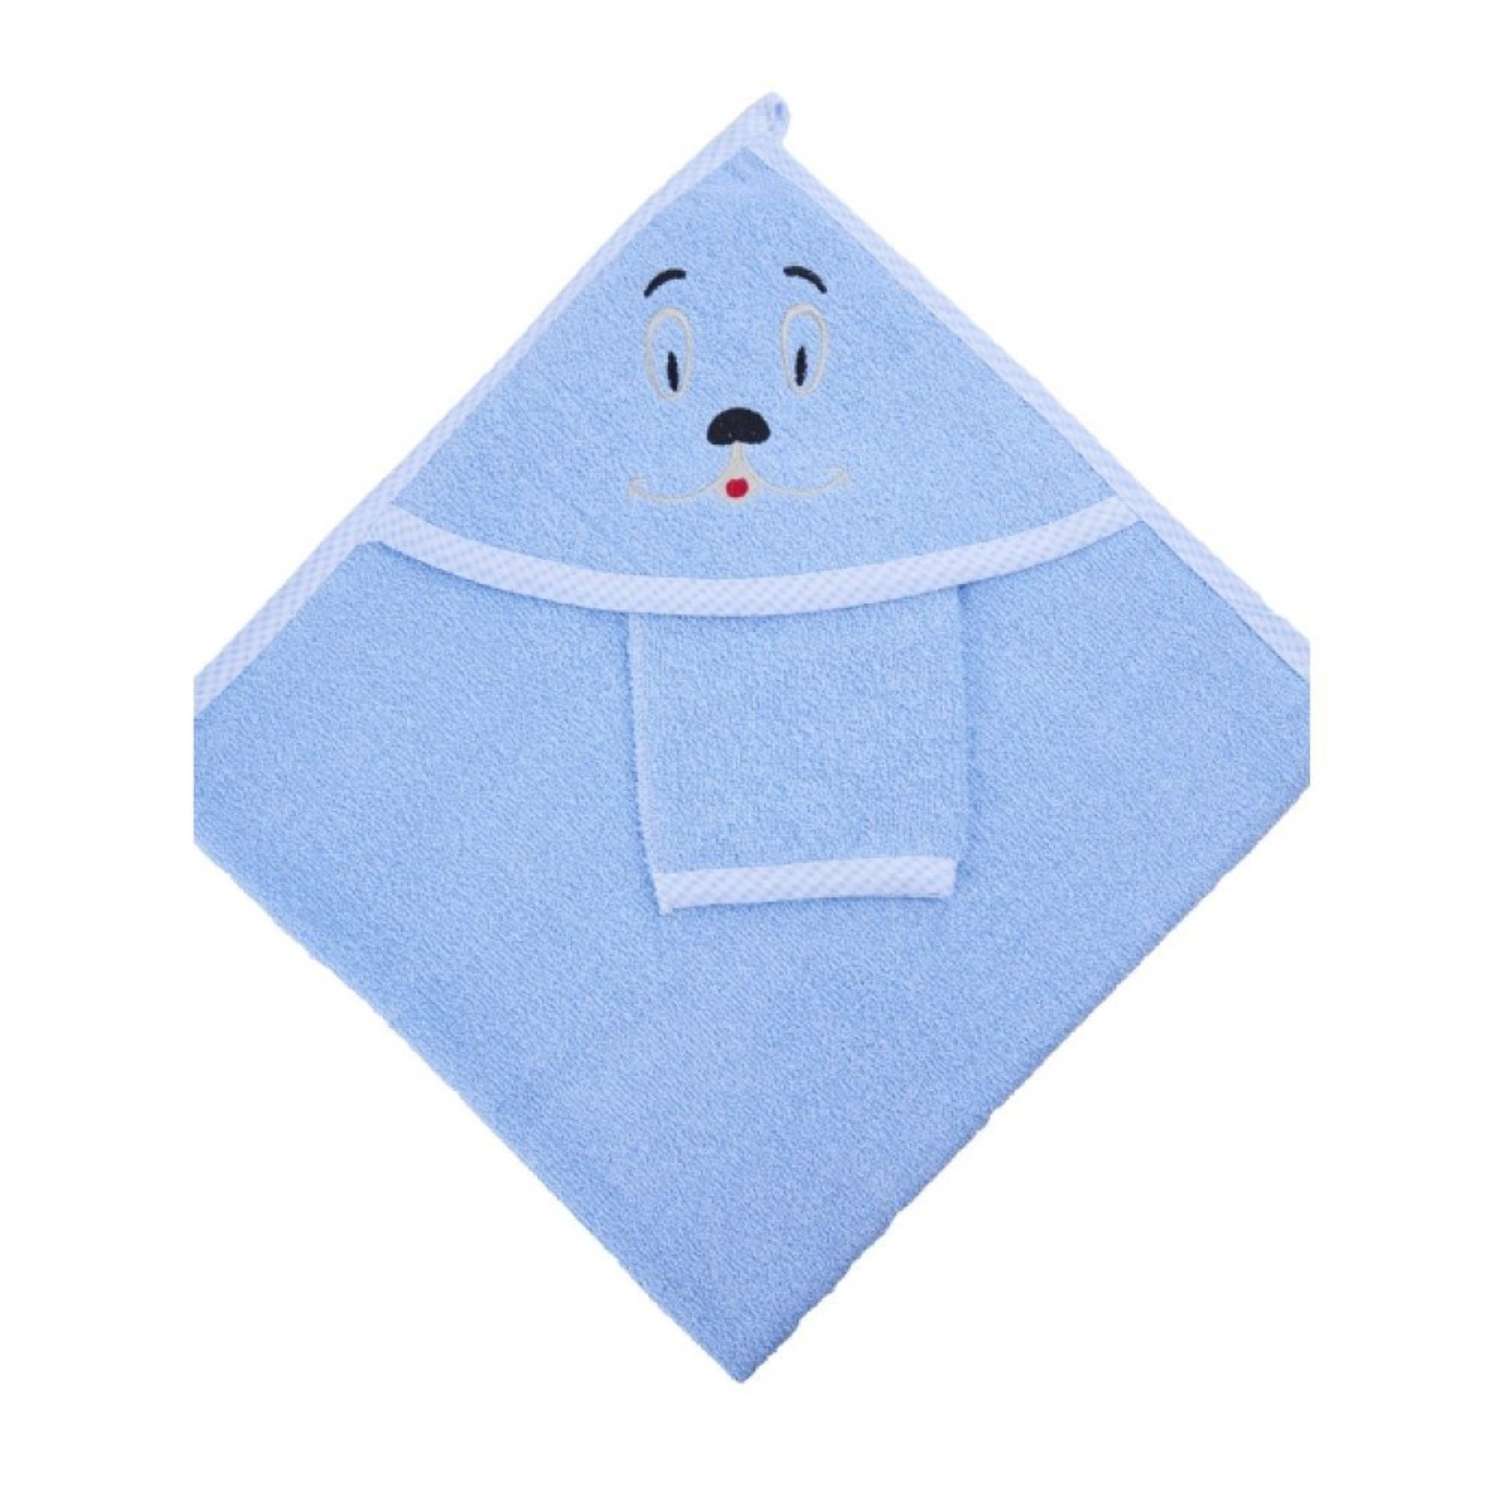 Набор для купания малыша M-BABY махровое полотенце с уголком и рукавичка 100% хлопок голубой - фото 1